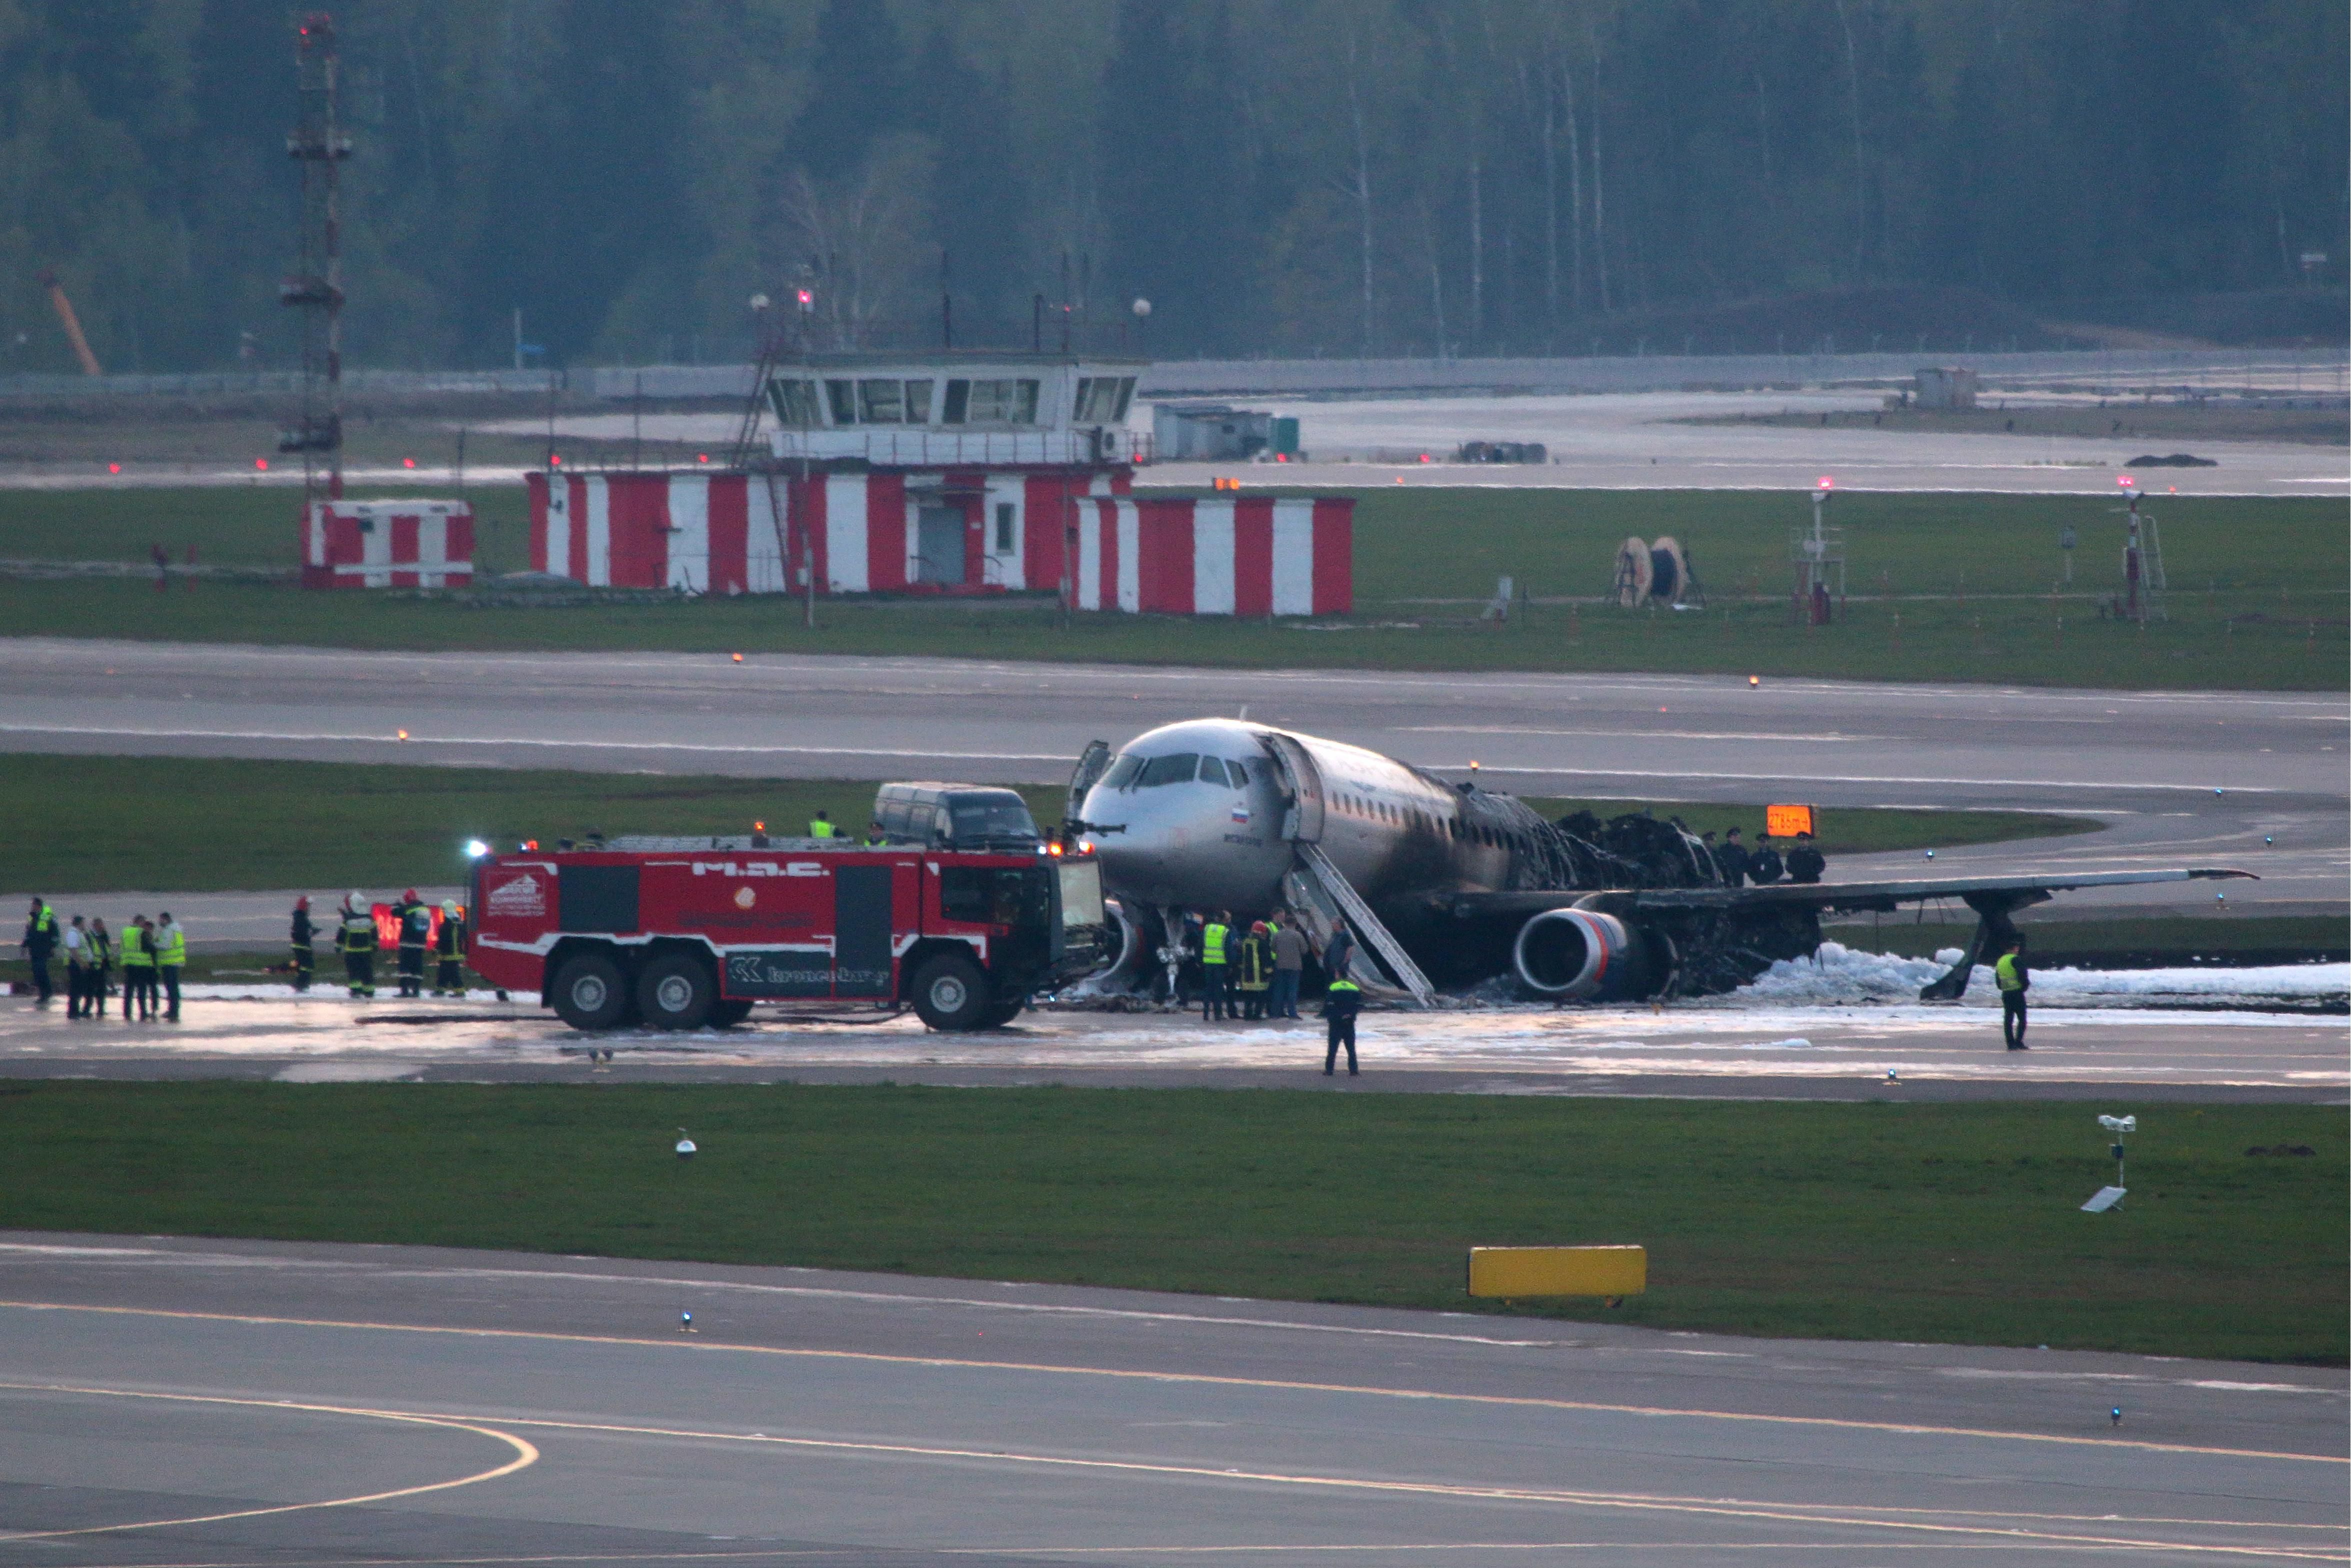 Авиакатастрофа в "Шереметьево": в Сети возникли споры относительно гибели пассажиров